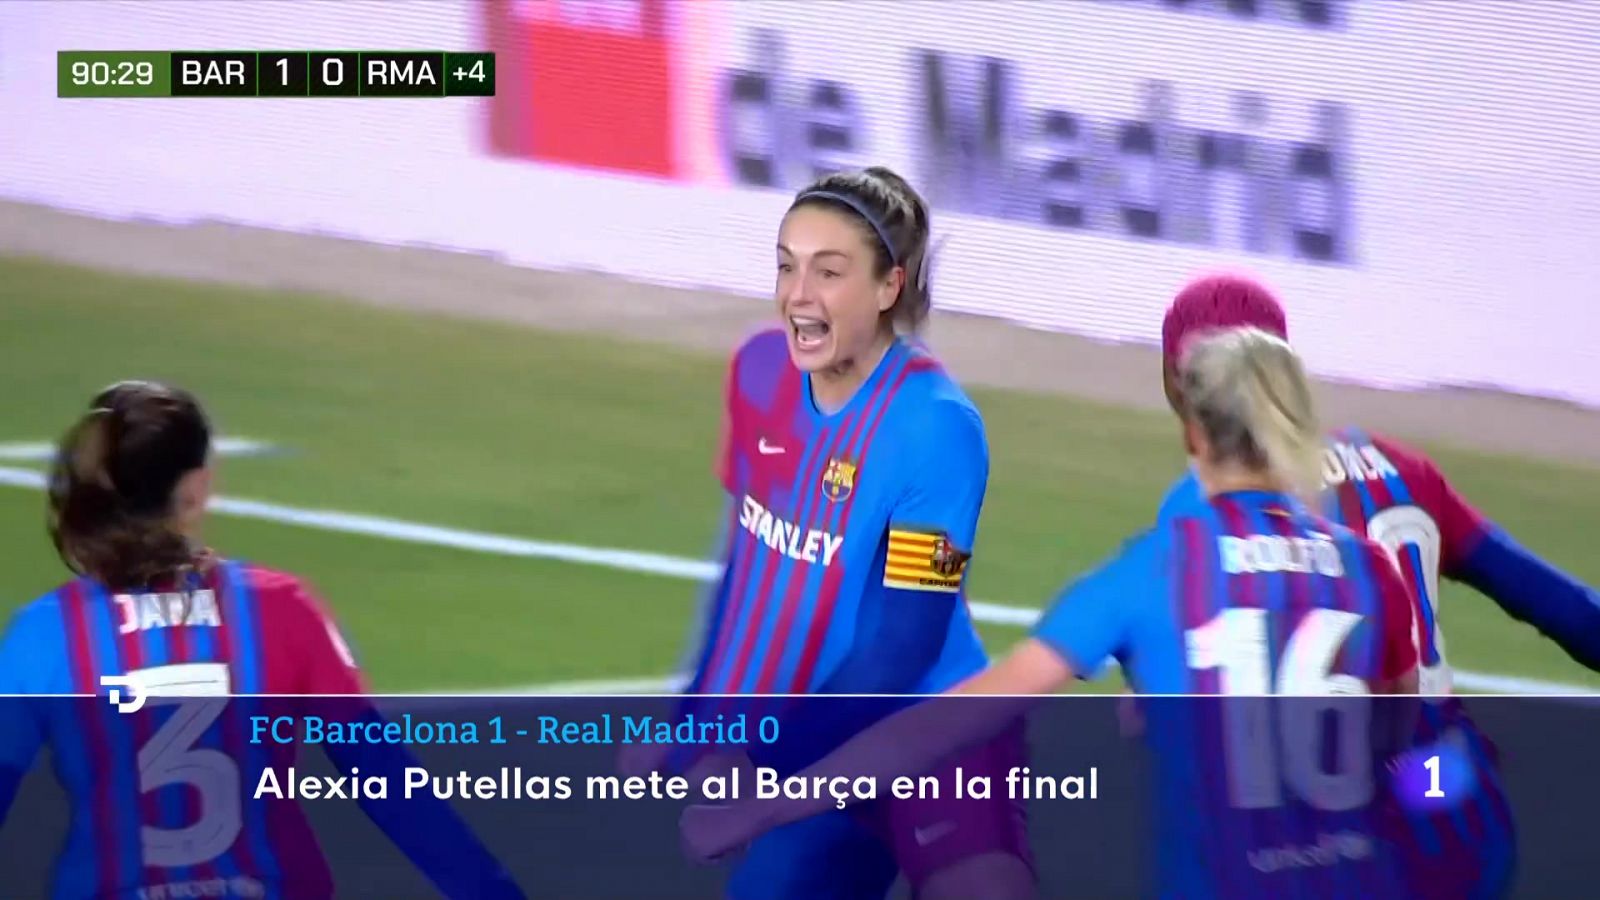 Alexia Putellas clasifica al Barça para la final de la Supercopa tras una gran resistencia del Real Madrid -- Ver ahora